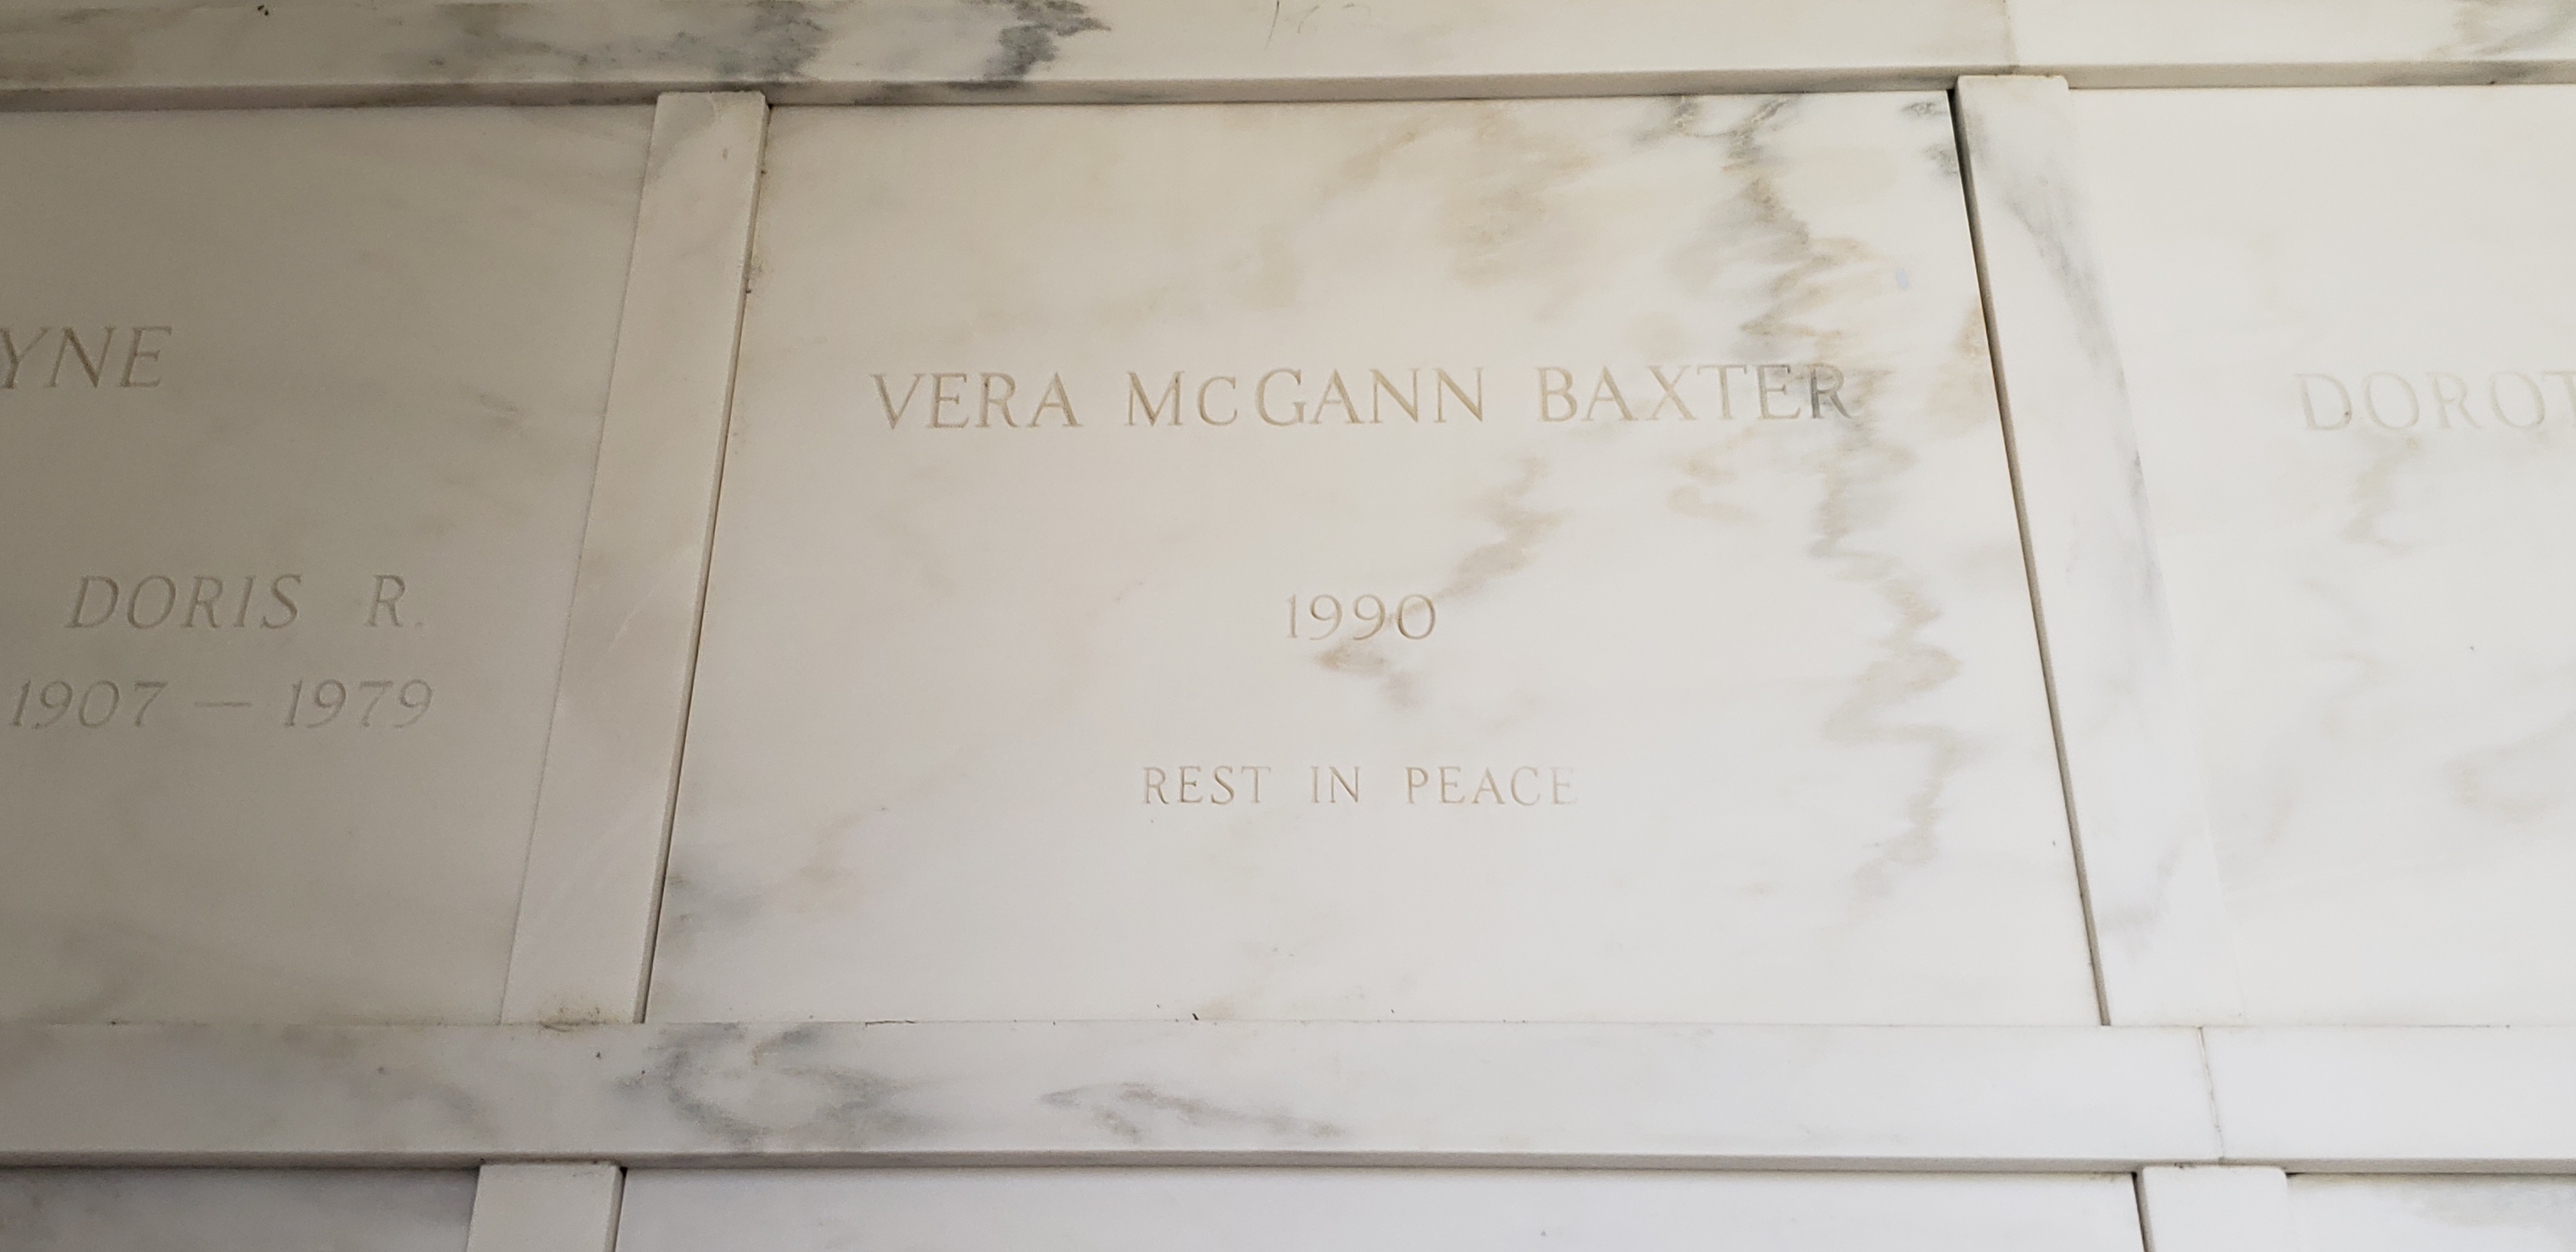 Vera McGann Baxter